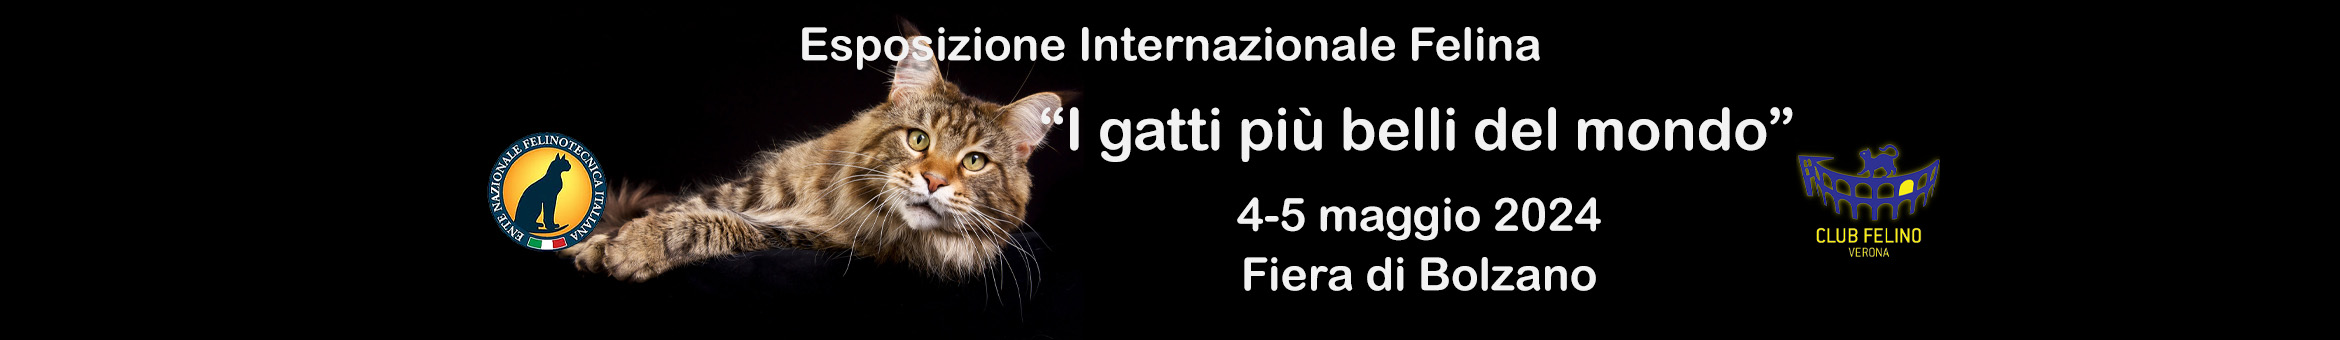 I gatti più belli del mondo - Esposizione Felina ENFI Padova 24-25 febbraio 2024